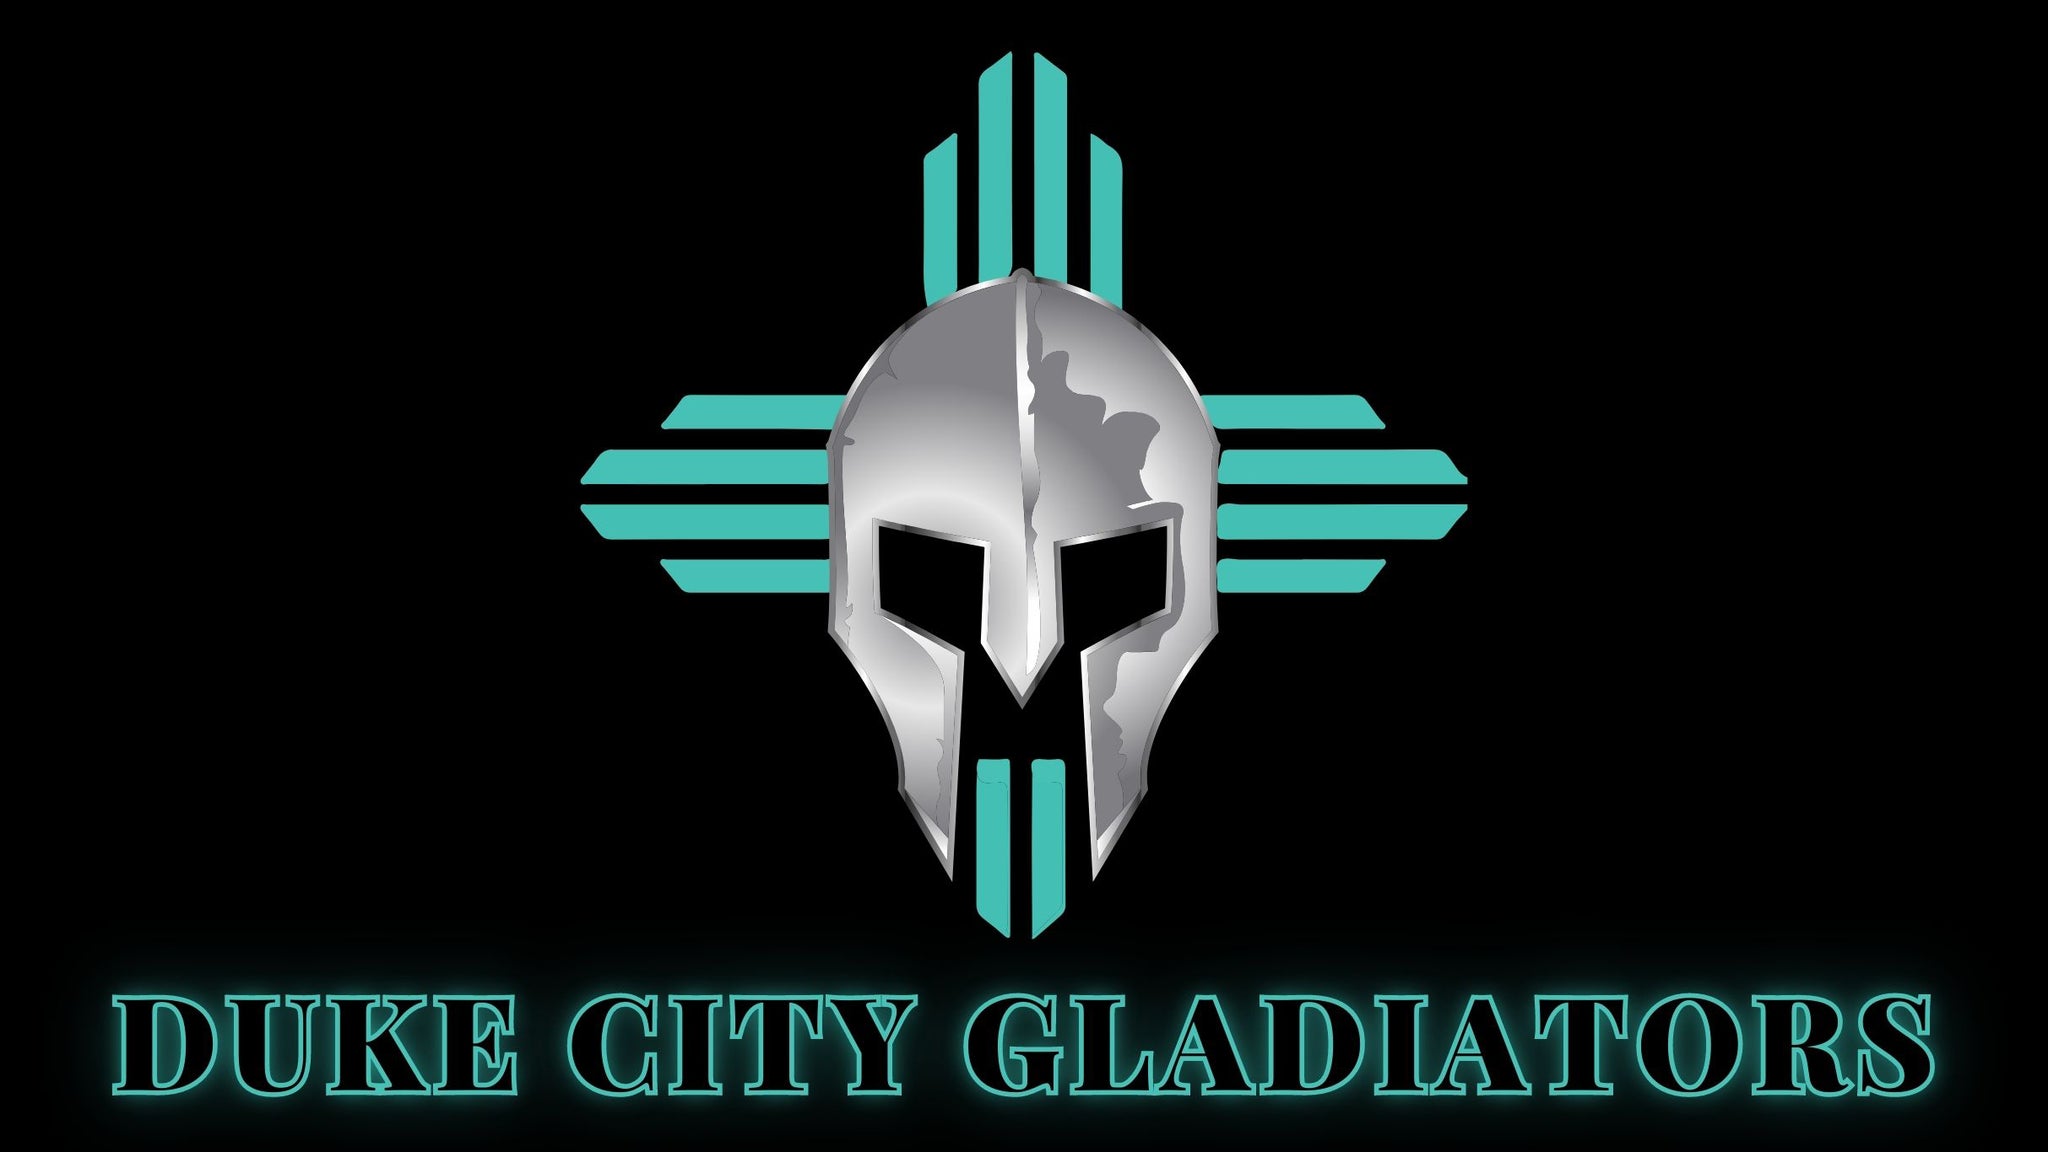 Duke City Gladiators vs Tucson Sugar Skulls